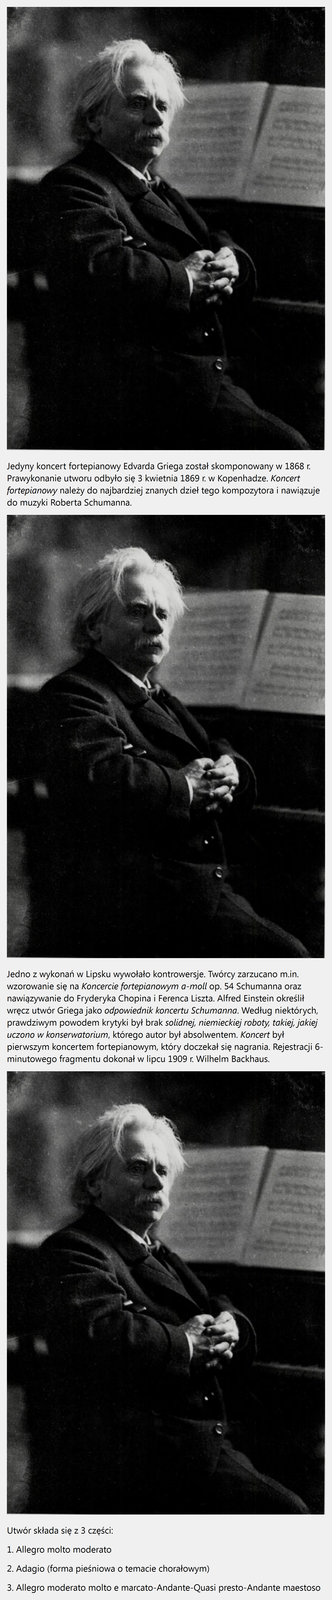 Prezentacja pt. Koncert fortepianowy a-moll op. 16. Jedyny koncert fortepianowy Edvarda Griega został skomponowany w 1868 r. Prawykonanie utworu odbyło się 3 kwietnia 1869 r. w Kopenhadze. Koncert fortepianowy należy do najbardziej znanych dzieł tego kompozytora i nawiązuje do muzyki Roberta Schumanna. Jedno z wykonań w Lipsku wywołało kontrowersje. Twórcy zarzucano m.in. wzorowanie się na Koncercie fortepianowym a-moll op. 54 Schumanna oraz nawiązywanie do Fryderyka Chopina i Ferenca Liszta. Alfred Einstein określił wręcz utwór Griega jako odpowiednik koncertu Schumanna. Według niektórych, prawdziwym powodem krytyki był brak solidnej, niemieckiej roboty, takiej, jakiej uczono w konserwatorium, którego autor był absolwentem. Koncert był pierwszym koncertem fortepianowym, który doczekał się nagrania. Rejestracji 6-minutowego fragmentu dokonał w lipcu 1909 r. Wilhelm Backhaus. Utwór składa się z 3 części: 1. Allegro molto moderato. 2. Adagio (forma pieśniowa o temacie chorałowym). 3. Allegro moderato molto e marcato-Andante-Quasi presto-Andante maestoso.